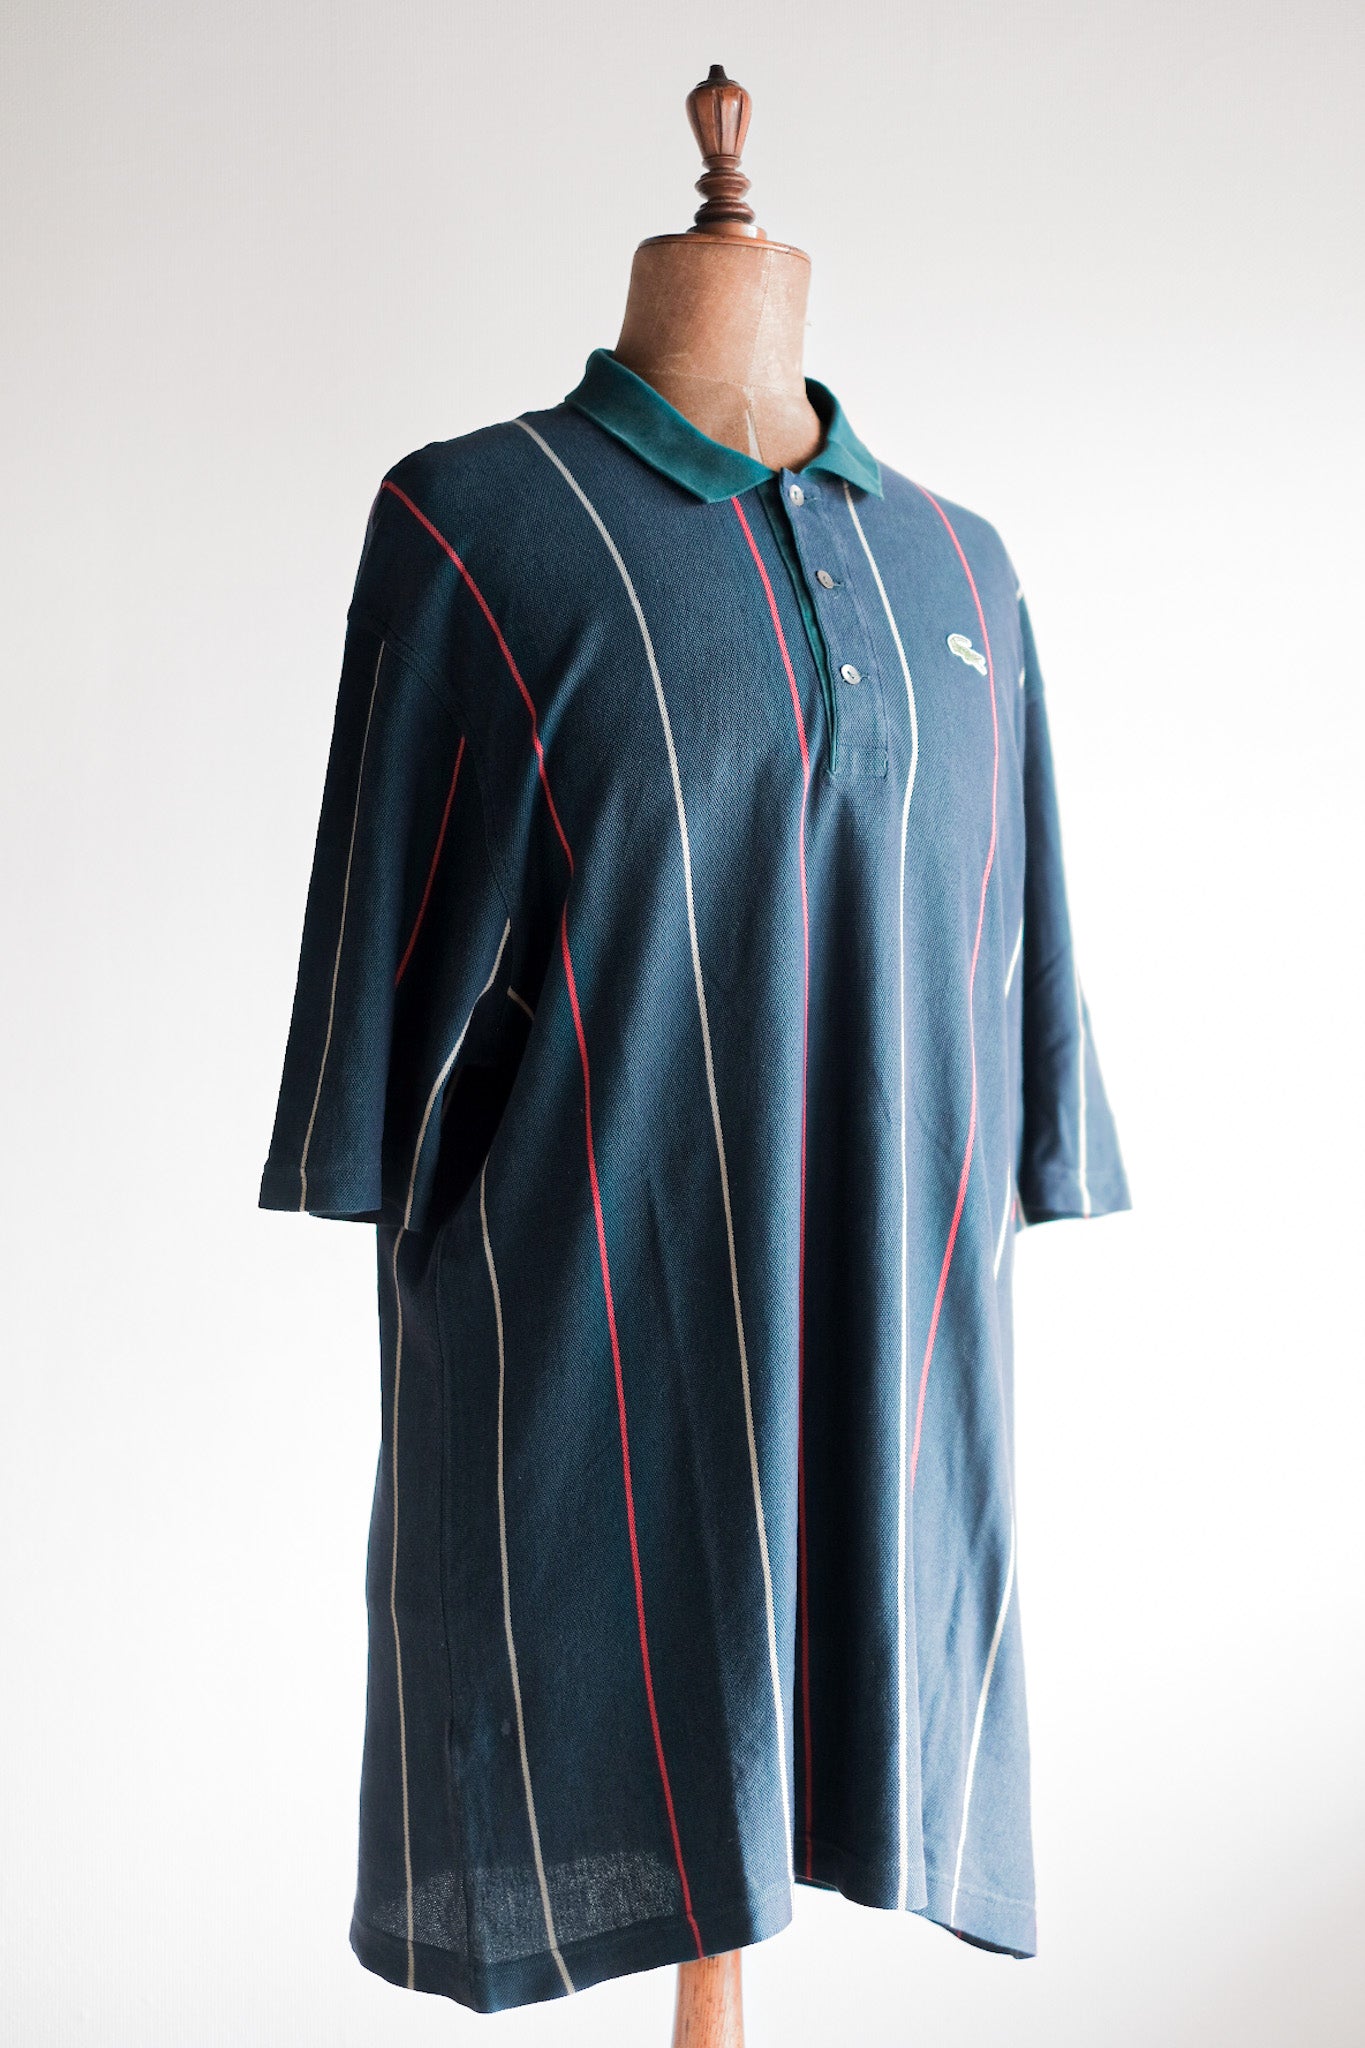 [〜80年代]顏色的lacoste s/s polo襯衫尺寸。8“多色”